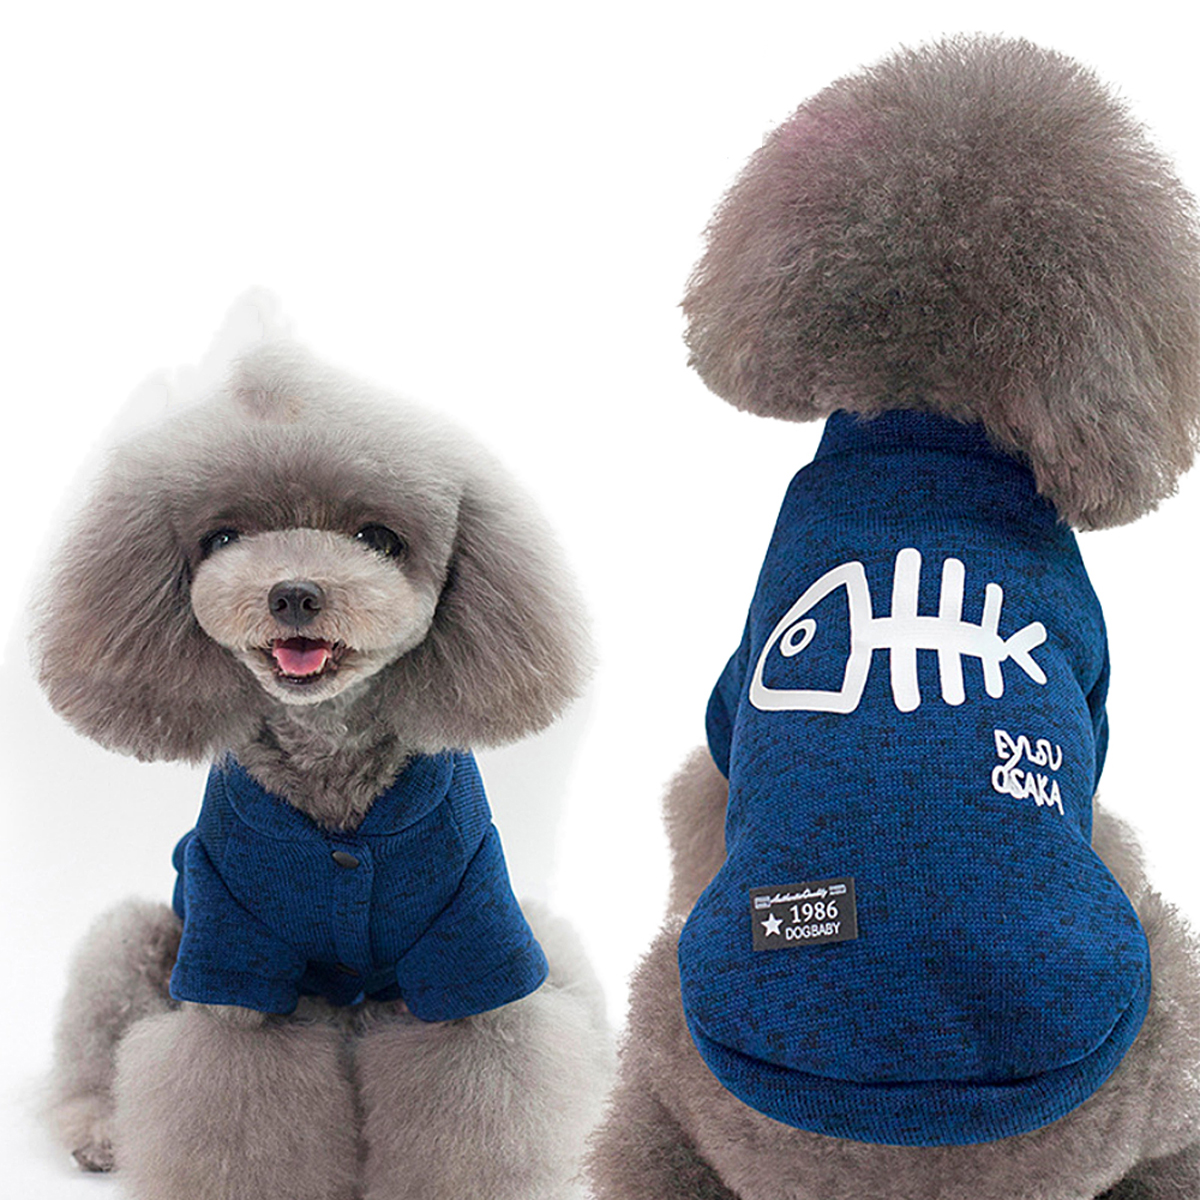 

Pet Собака Soft Хлопок Куртка Одежда Пальто Good Warmth Мода Classic Стиль Пальто